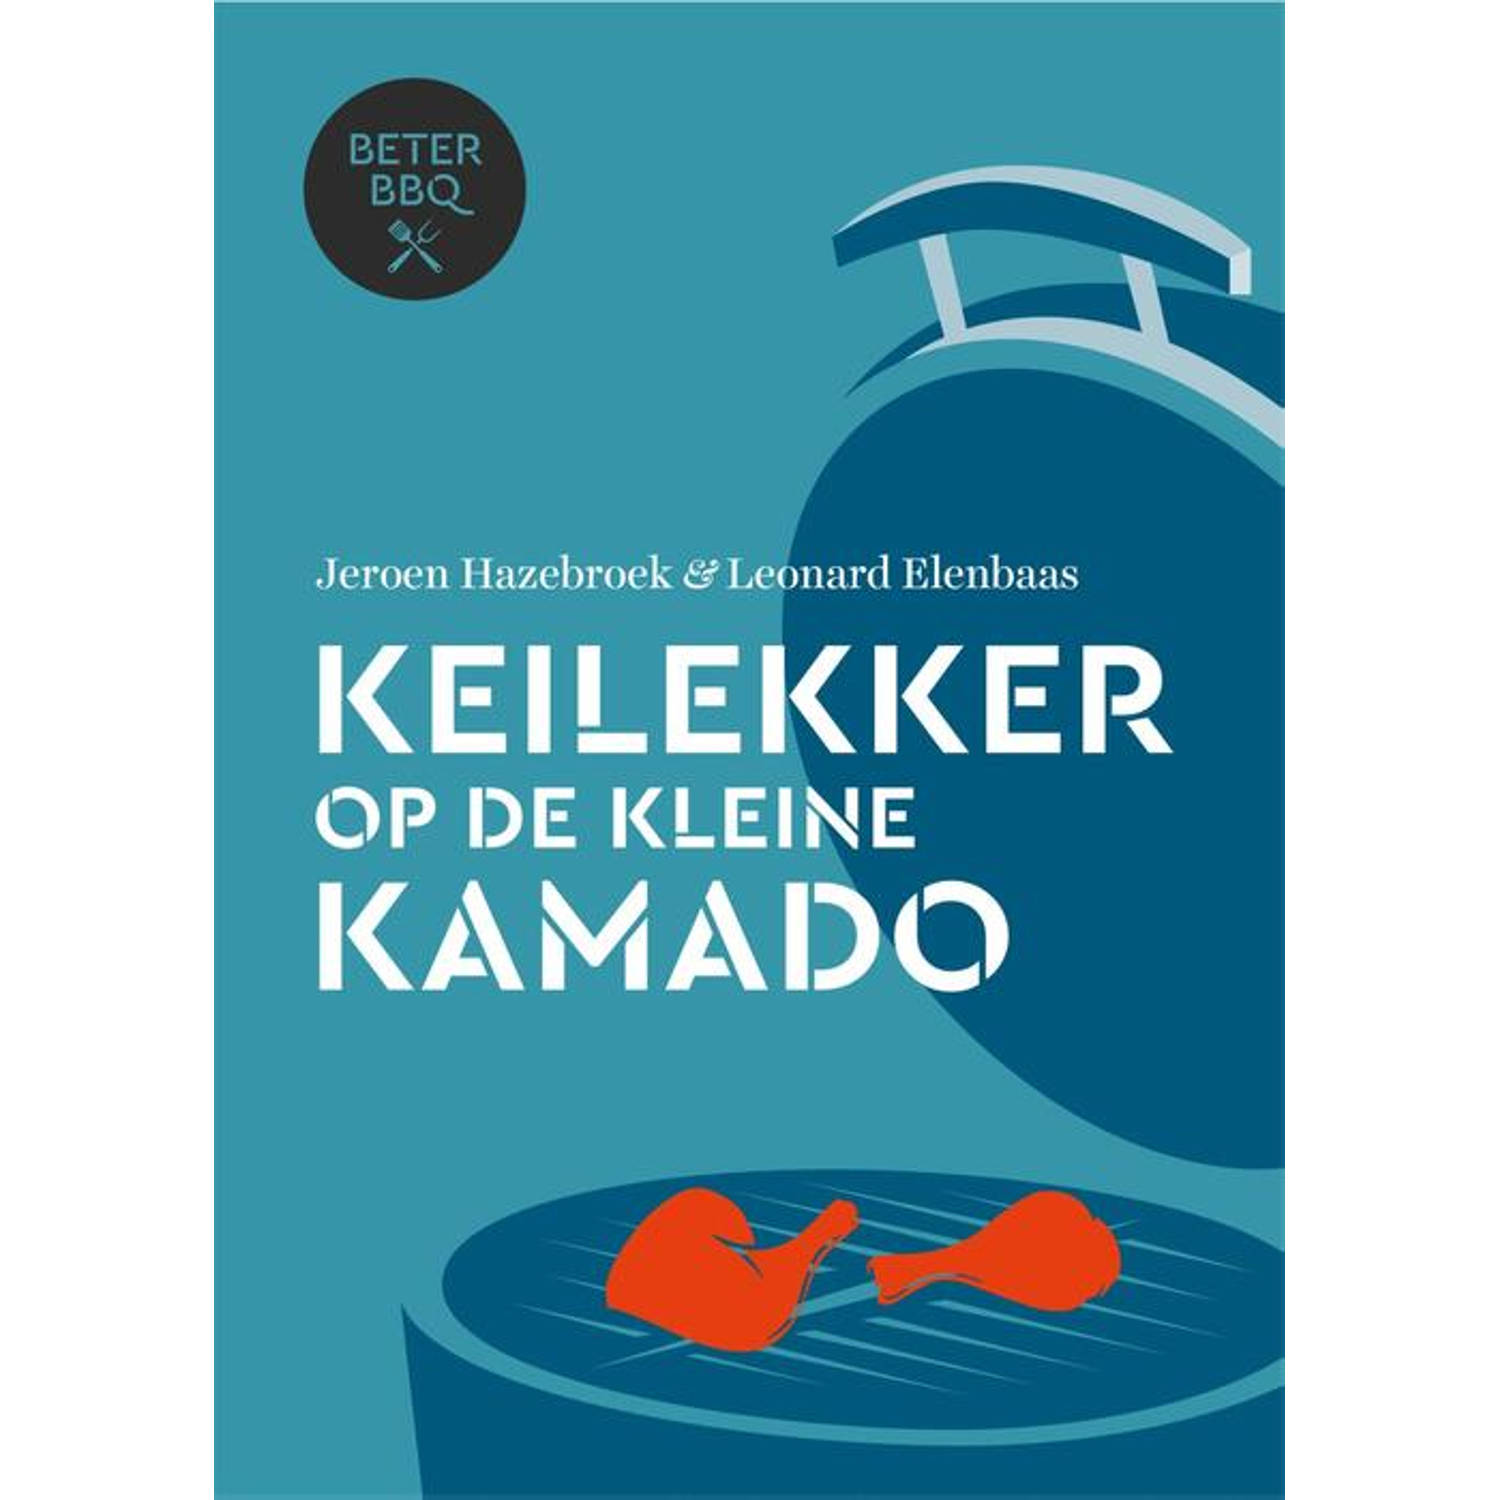 BeterBBQ Keilekker op de kleine kamado. Jeroen Hazebroek, Hardcover